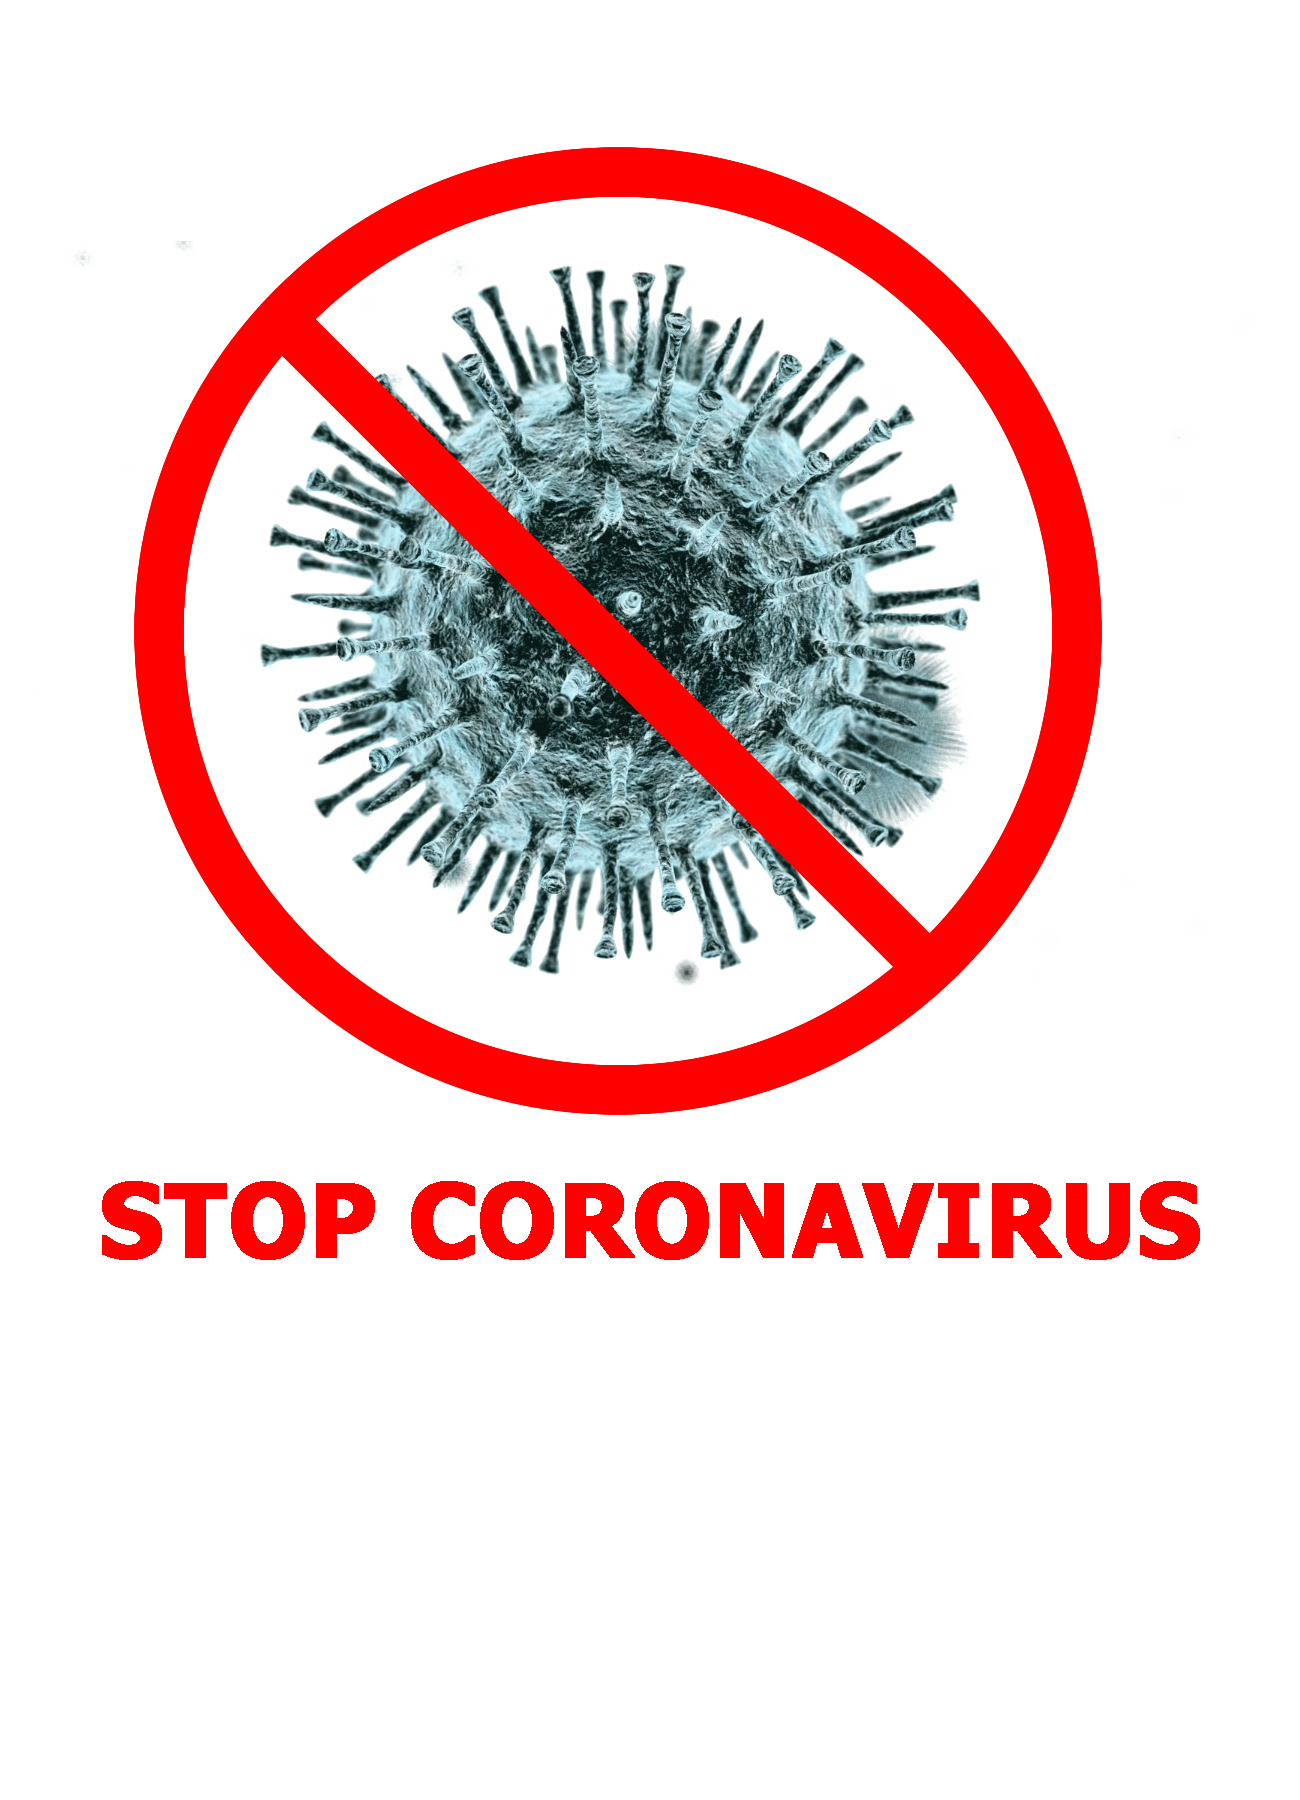 Stop Coronavirus Sign PNG File